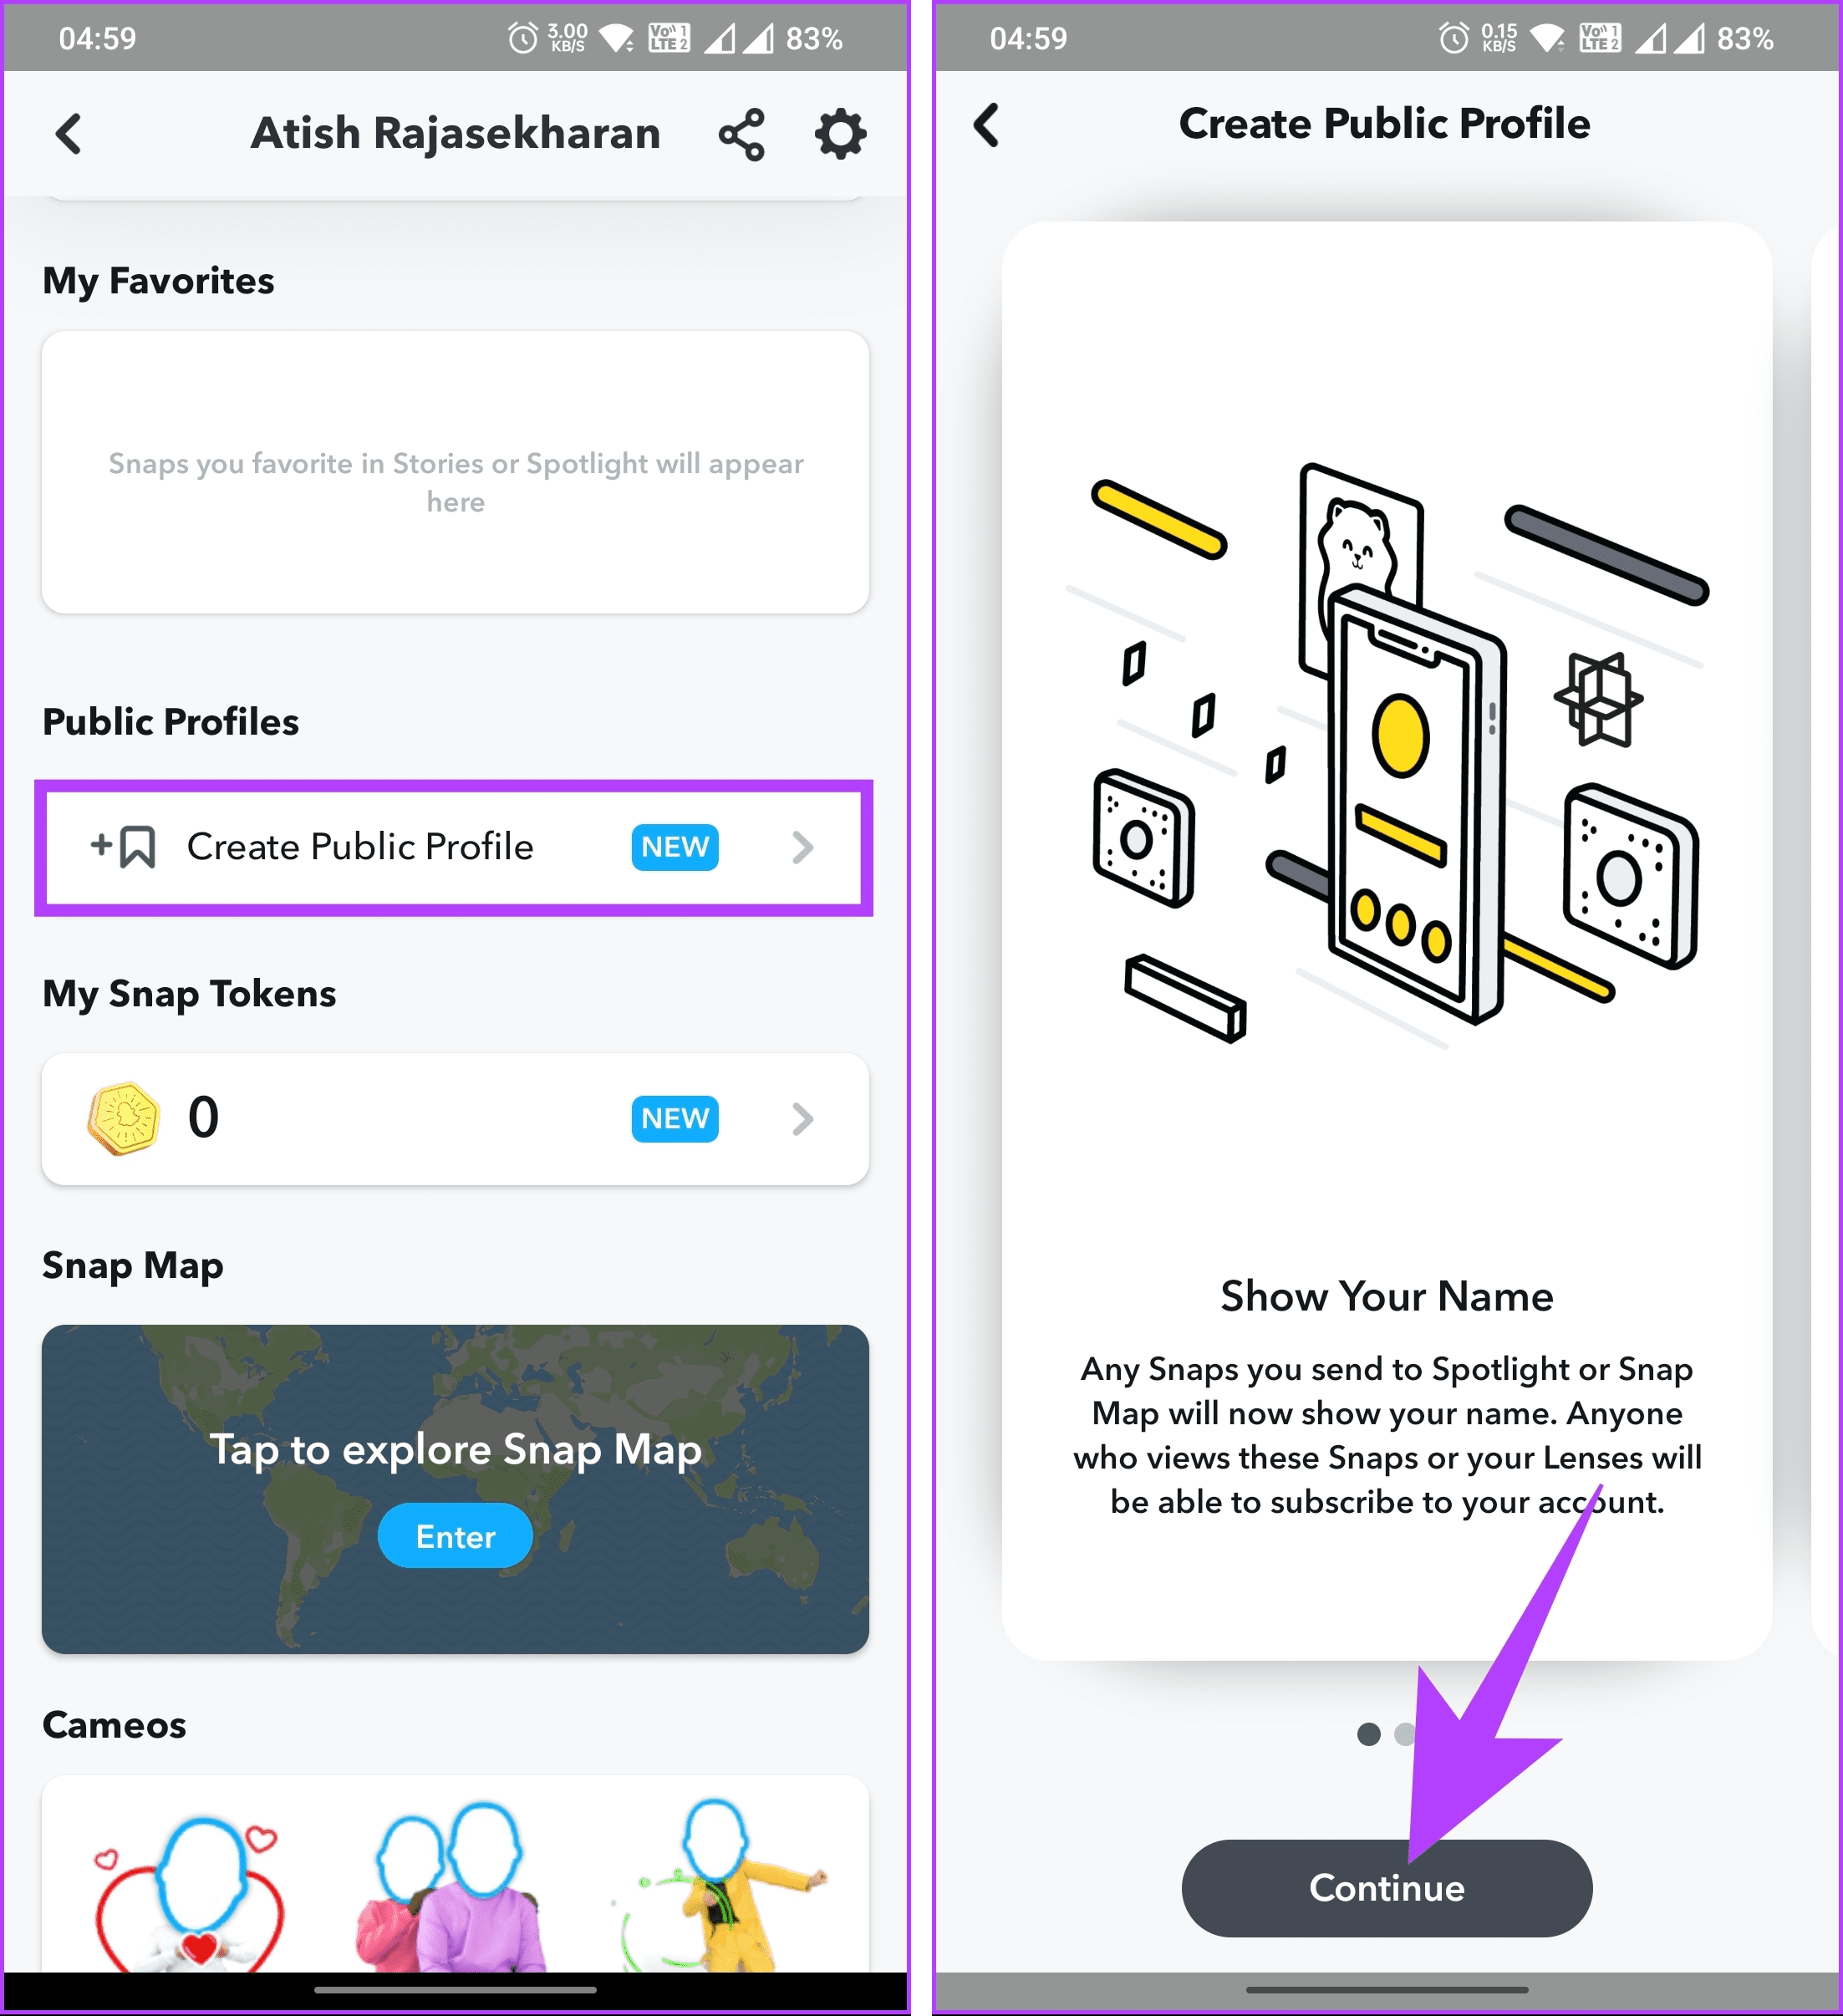 tap 'Create Public Profile'